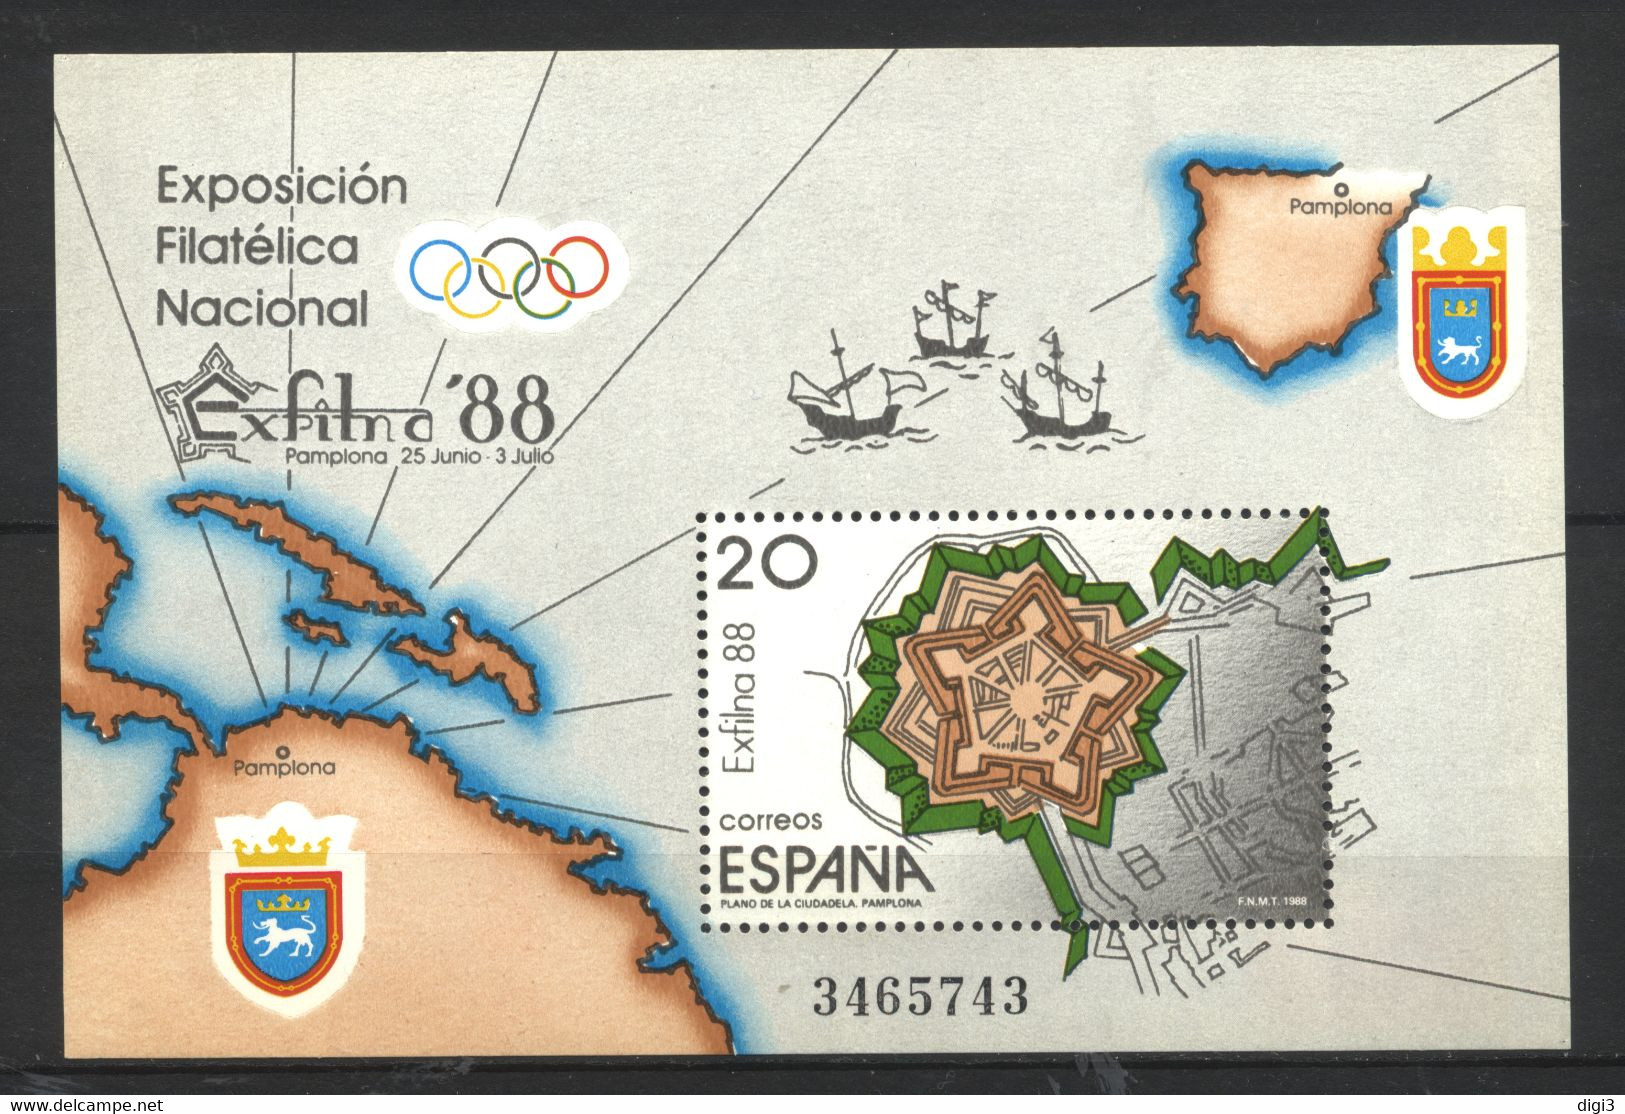 España, 1988, Exposiciòn Filatélica Nacional, EXFILNA 88, 20 P., Hojita, MNH** - Souvenirbögen